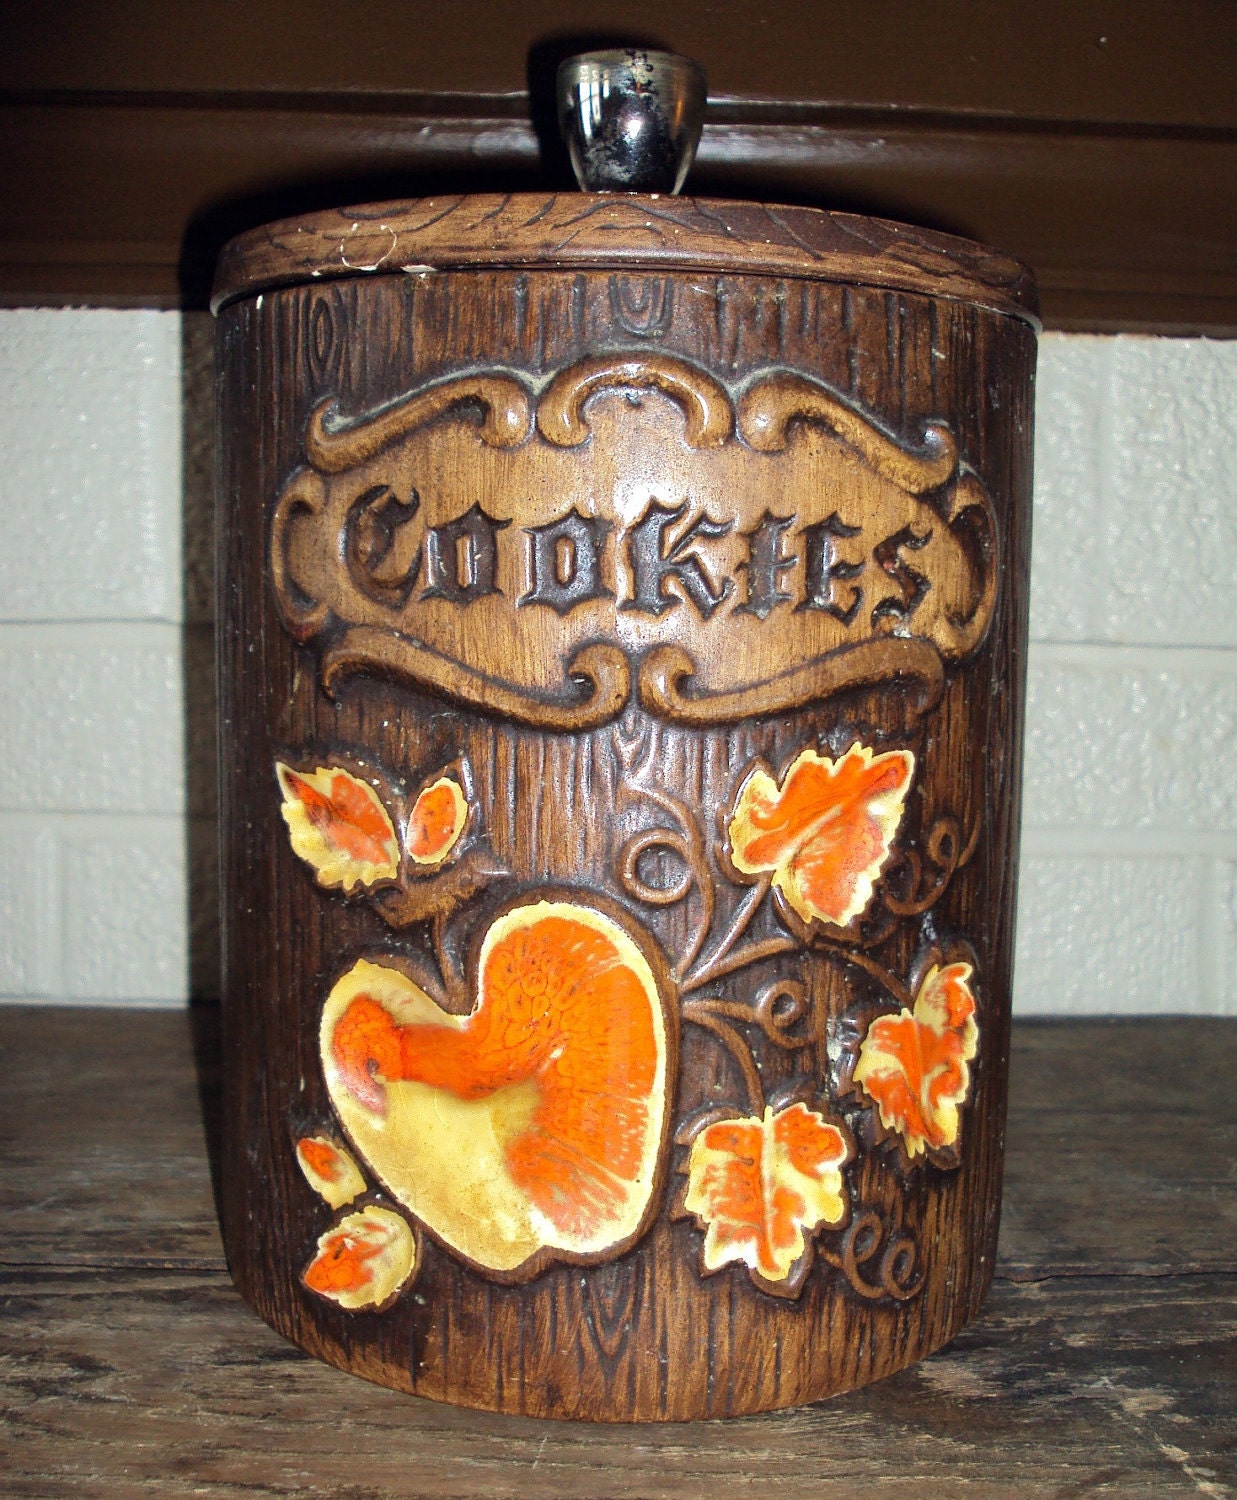 Treasure craft cookie jars